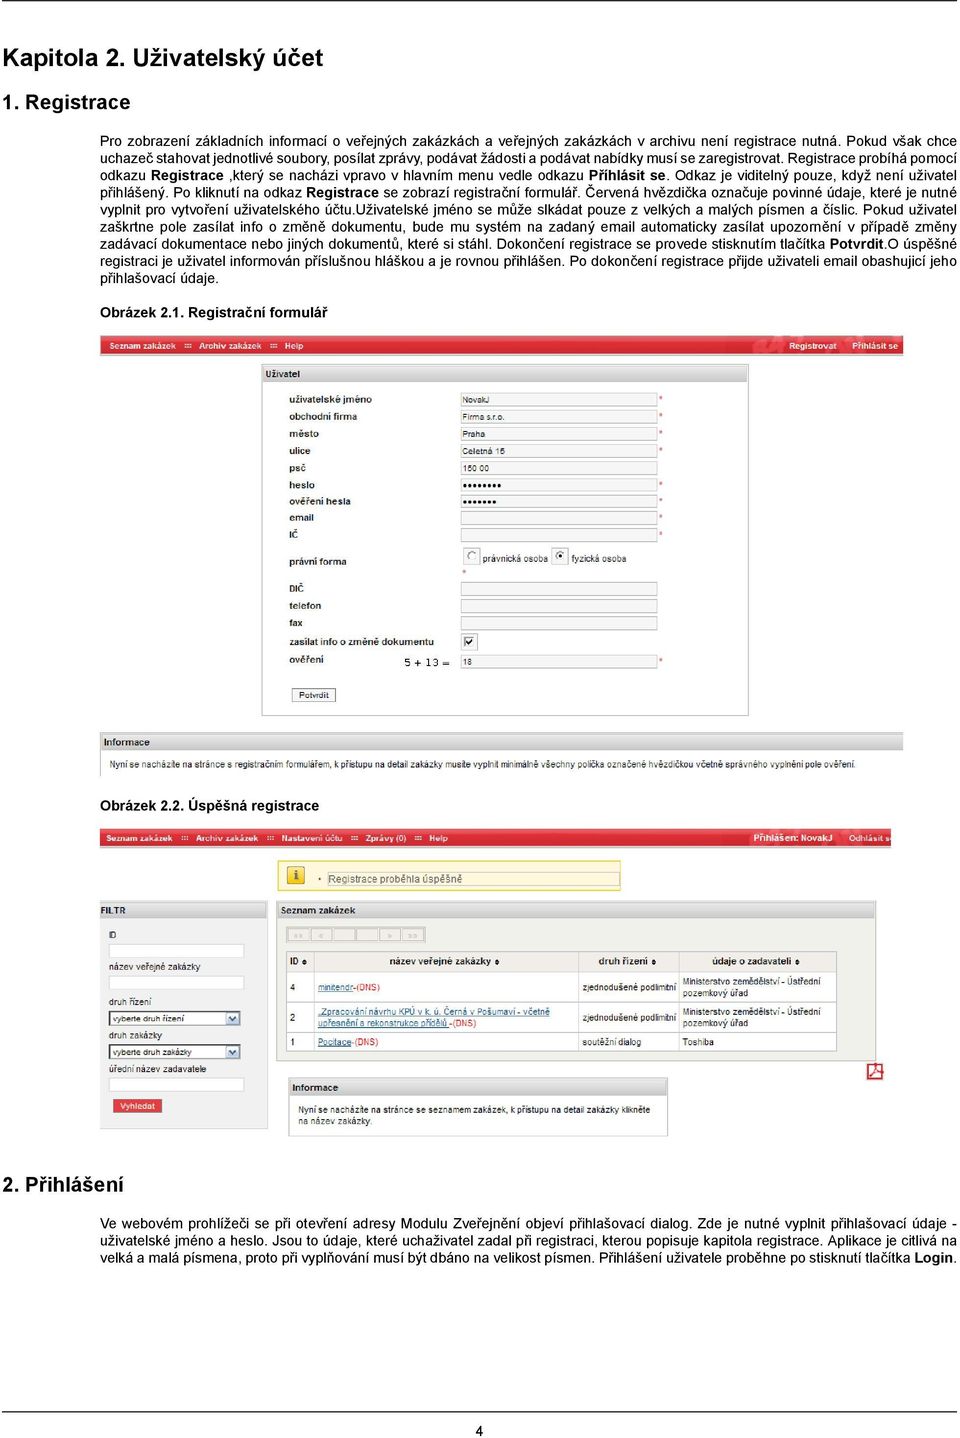 Registrace probíhá pomocí odkazu Registrace,který se nacházi vpravo v hlavním menu vedle odkazu Příhlásit se. Odkaz je viditelný pouze, když není uživatel přihlášený.